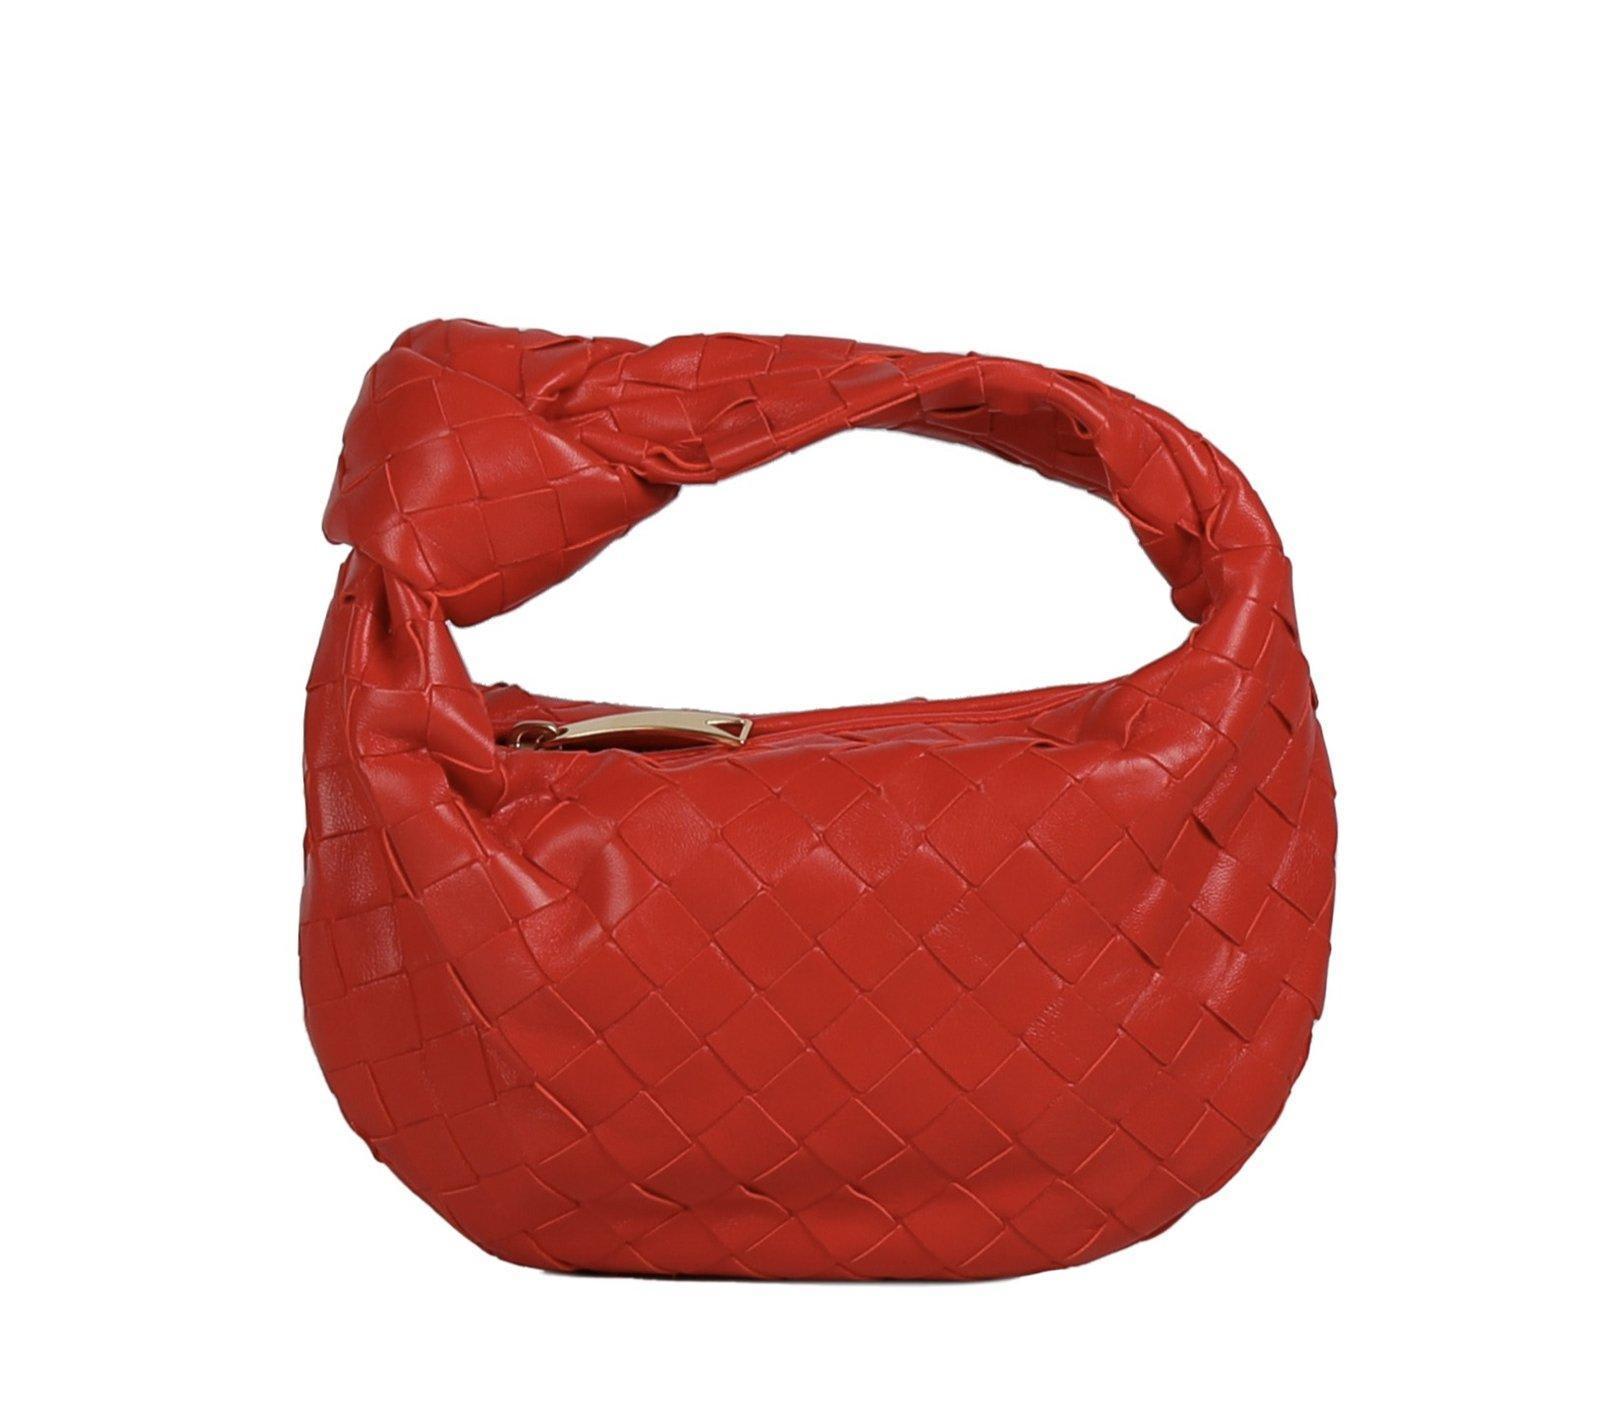 Jodie Mini Leather Tote Bag in Red - Bottega Veneta